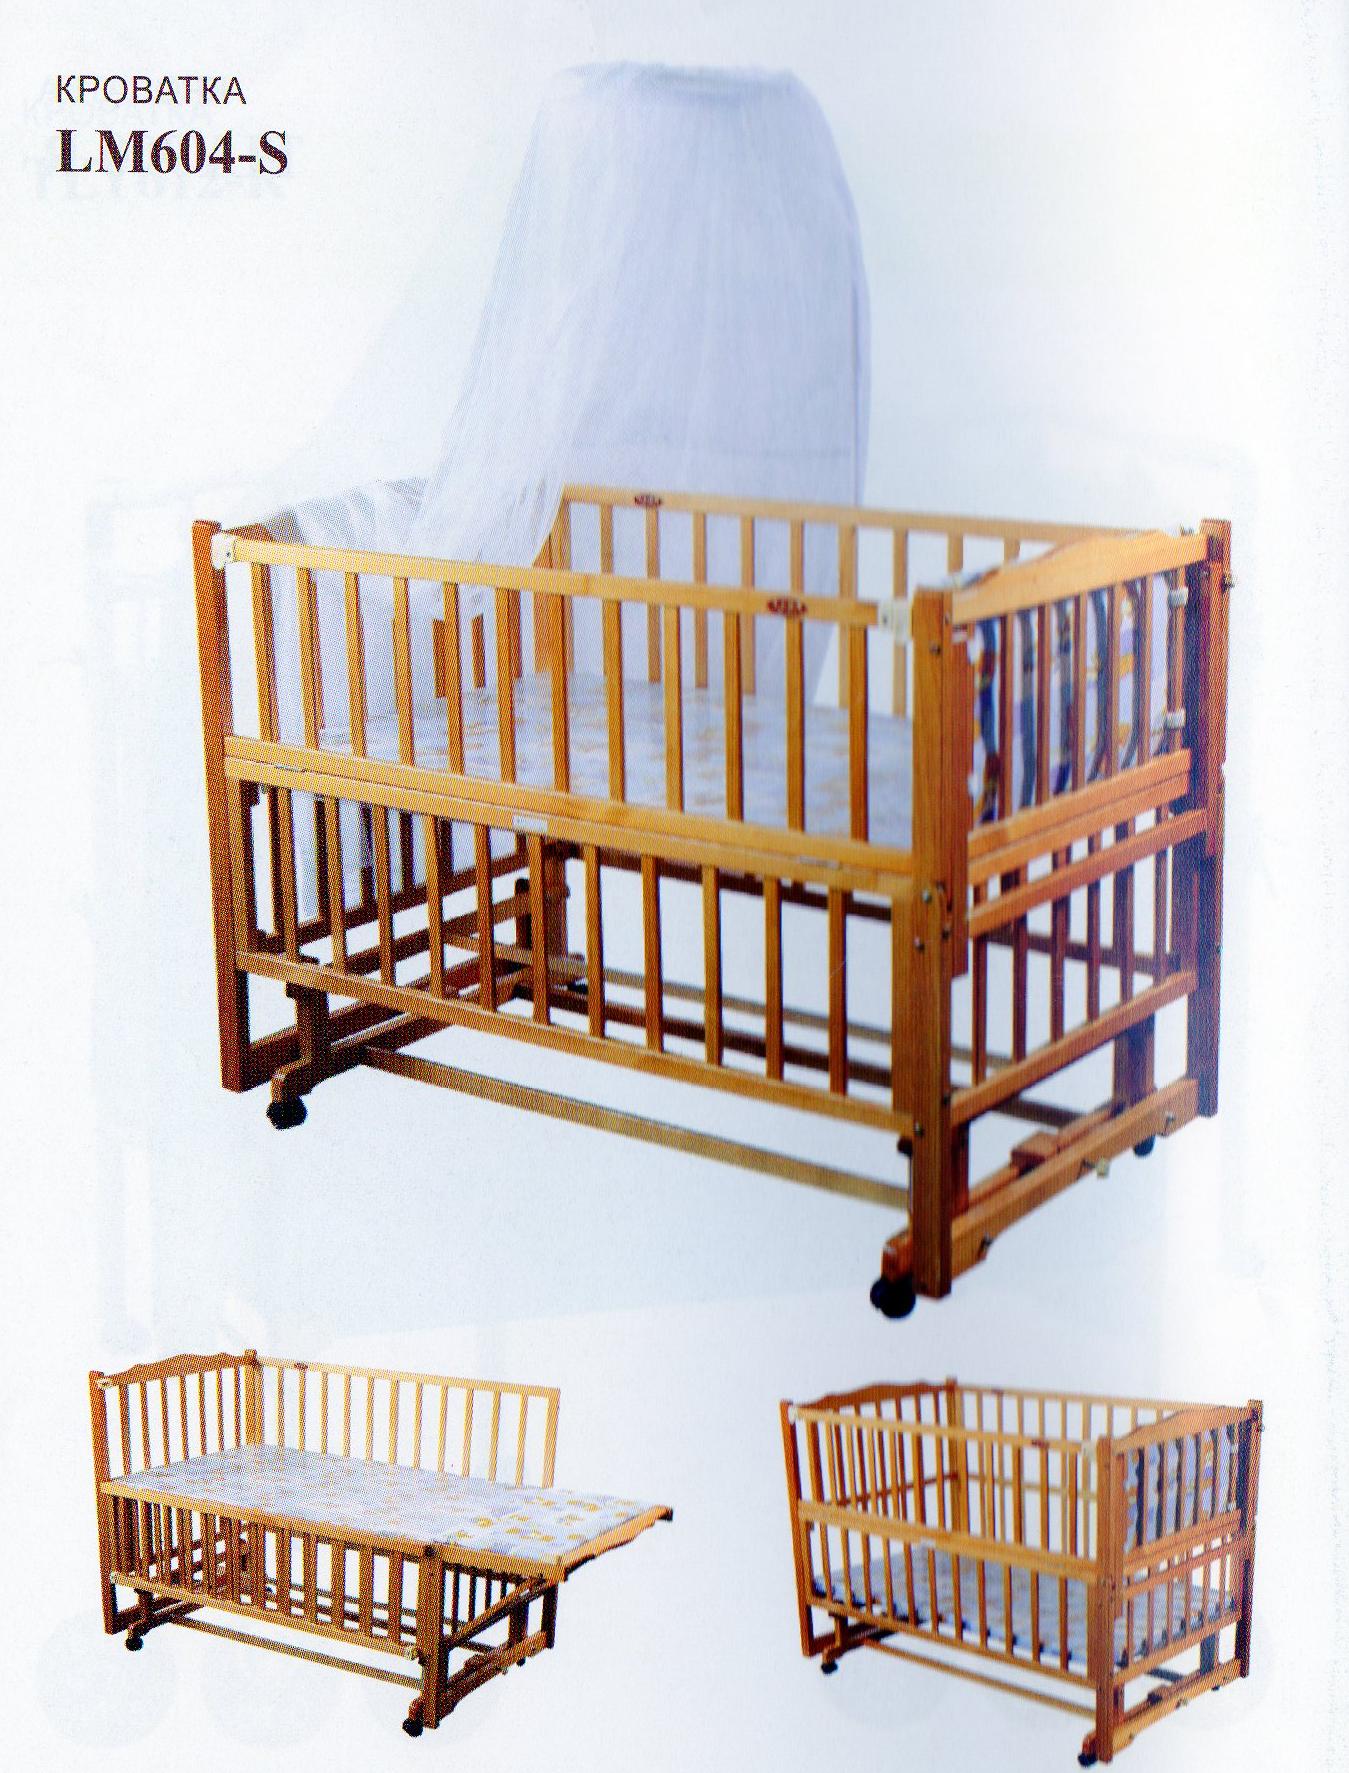 Продам кроватка детская goodbaby lm604sс 1599 uah Киев. Купить кроватку б/у Киев.